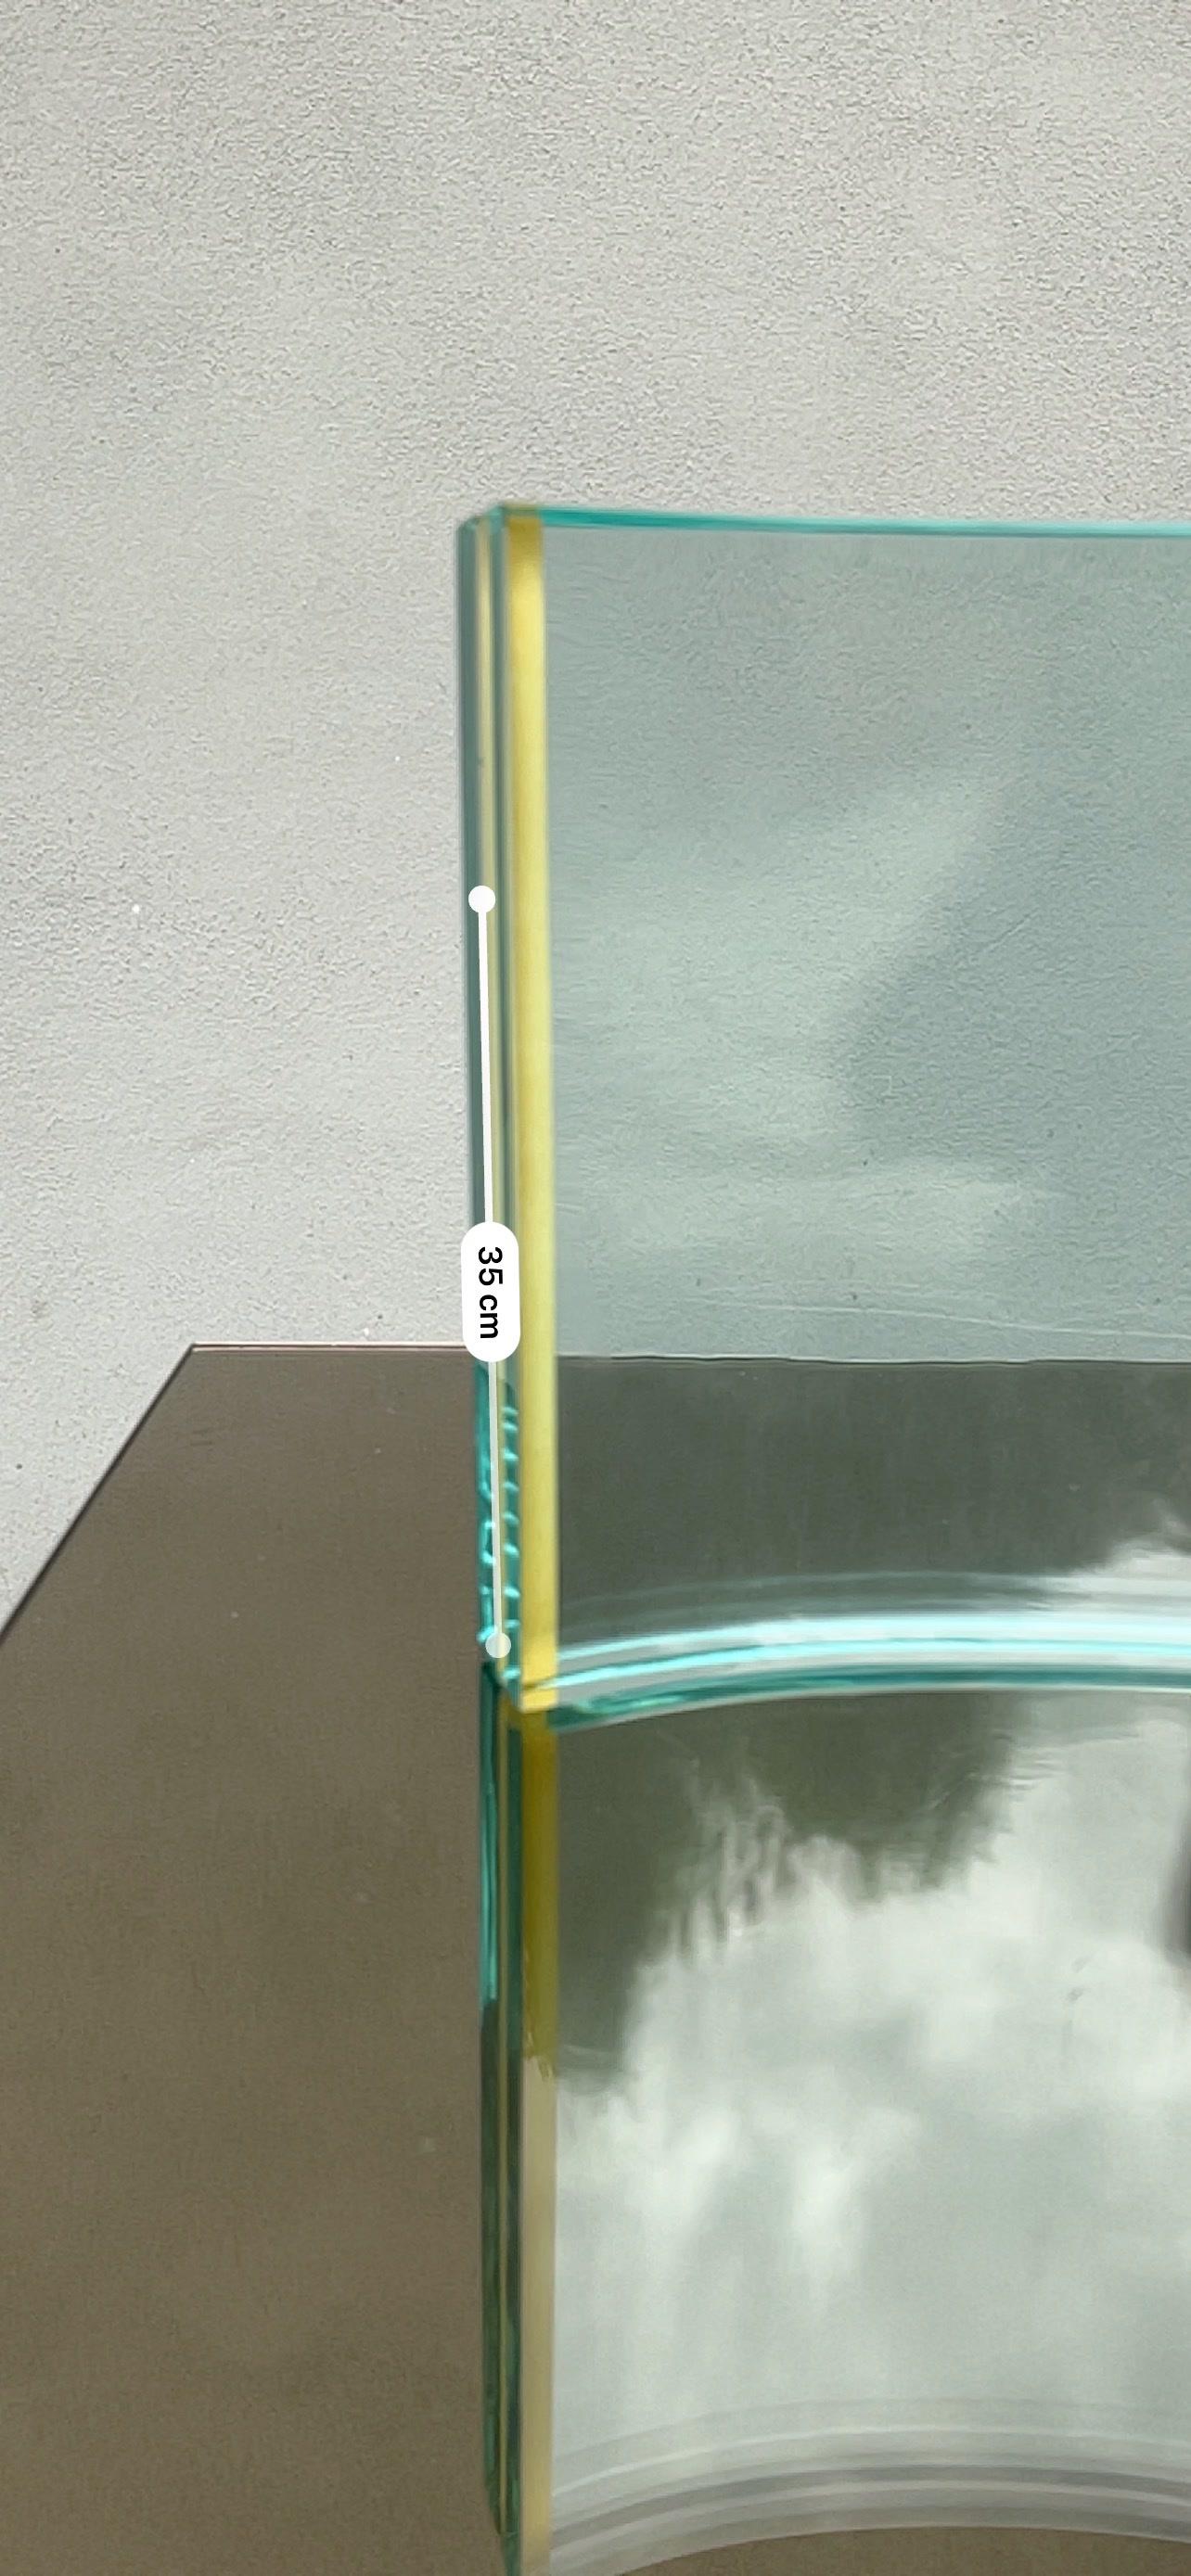 30x24 cm
Composta da due fogli di vetro accostati.